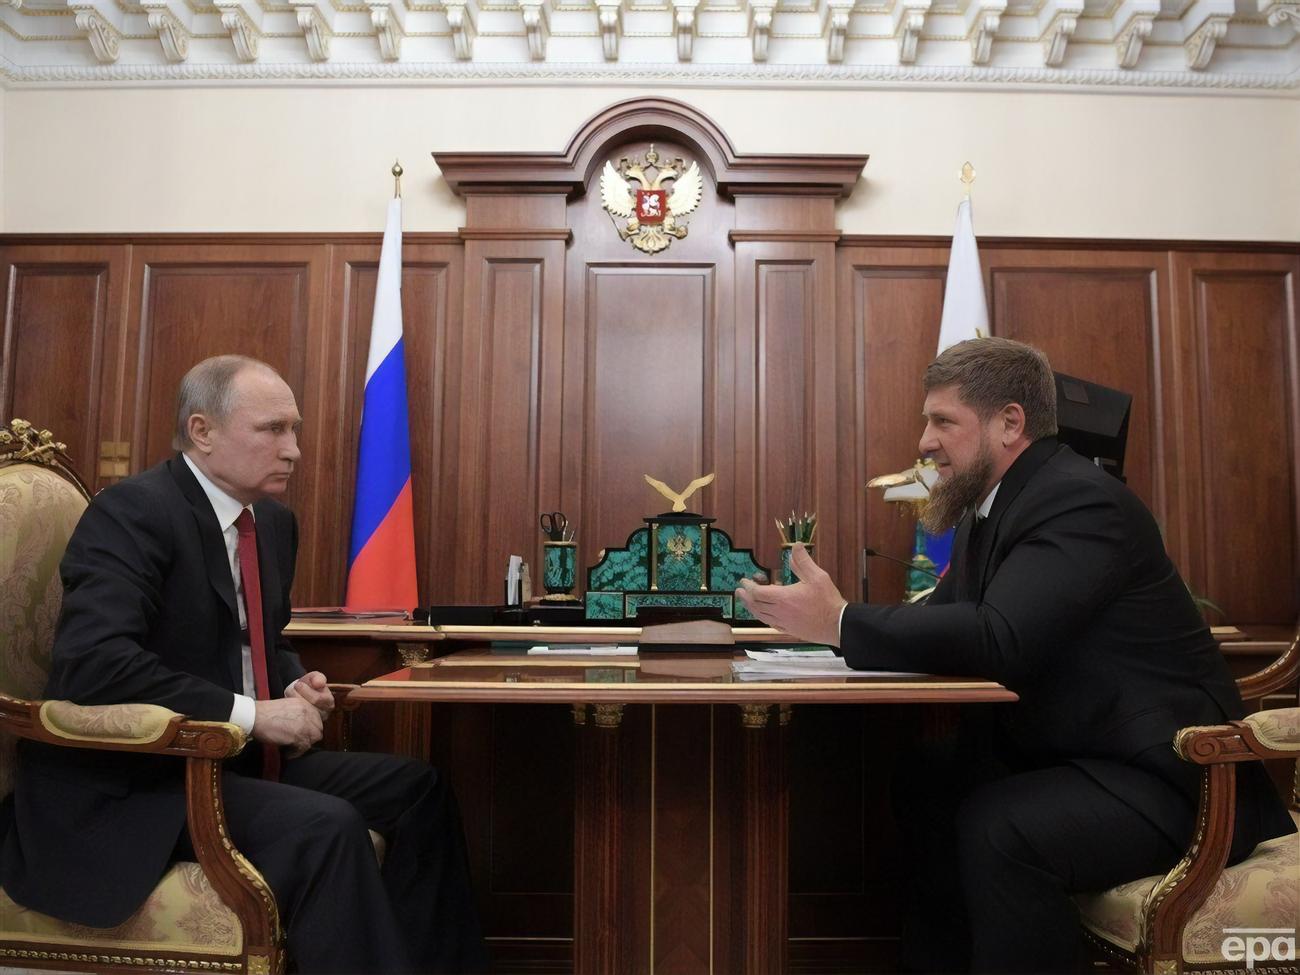 Avant le début de l’invasion russe de l’Ukraine, Poutine a ordonné à Kadyrov de tuer Zelensky